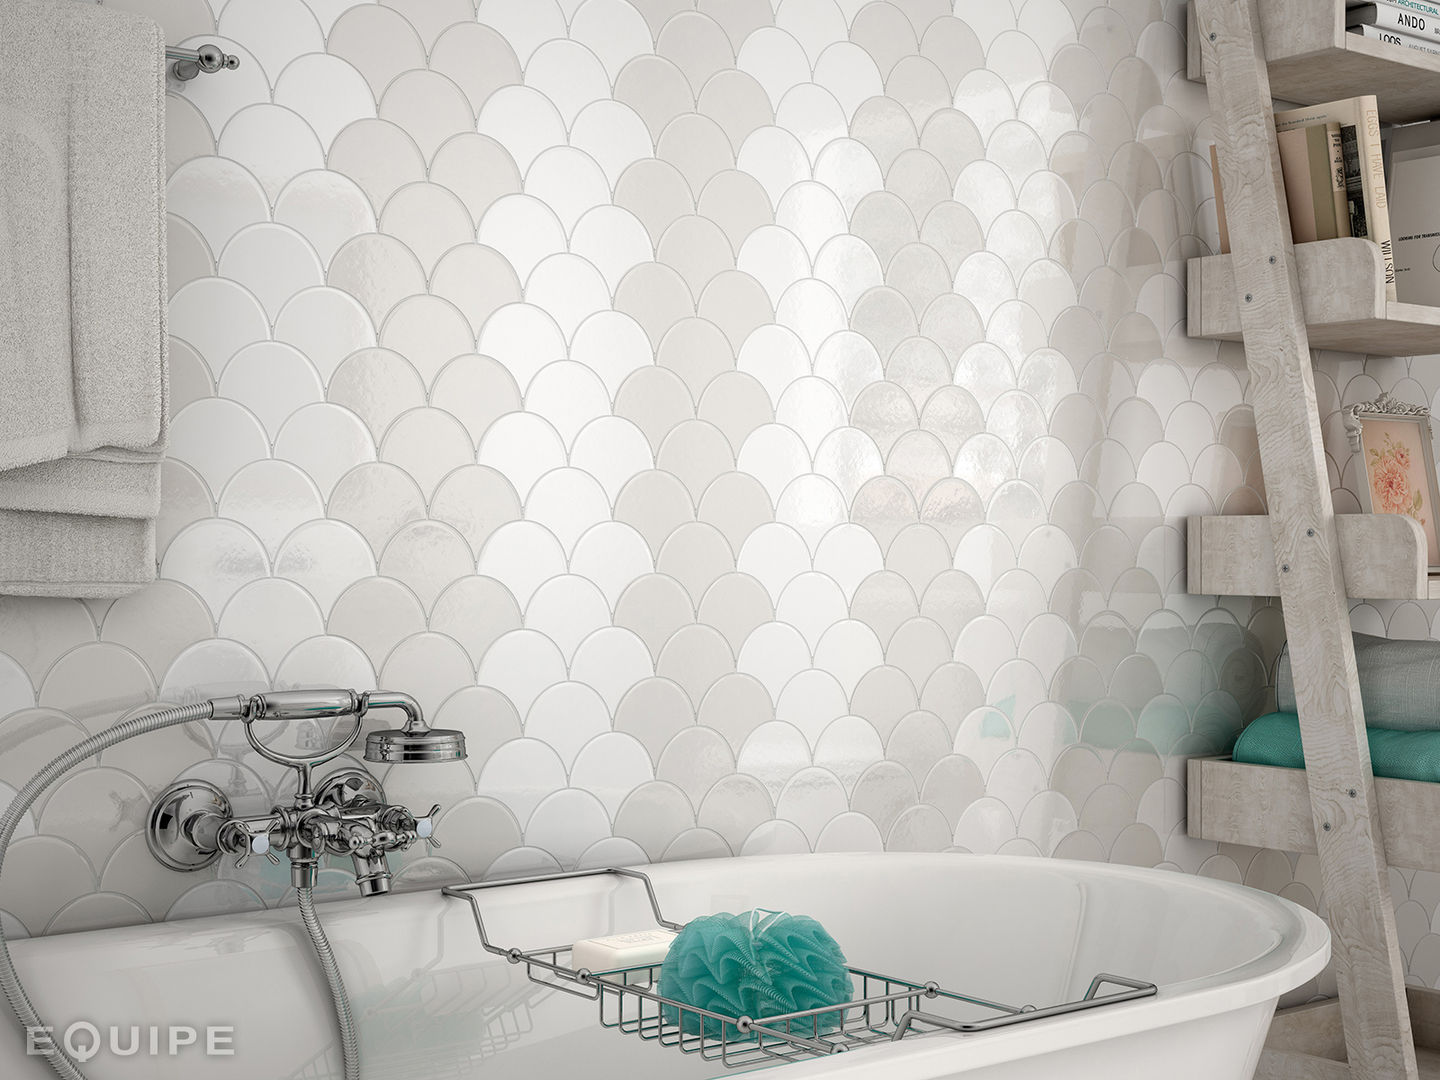 Scale Wall Tile, Equipe Ceramicas Equipe Ceramicas Mediterranean style bathroom Ceramic